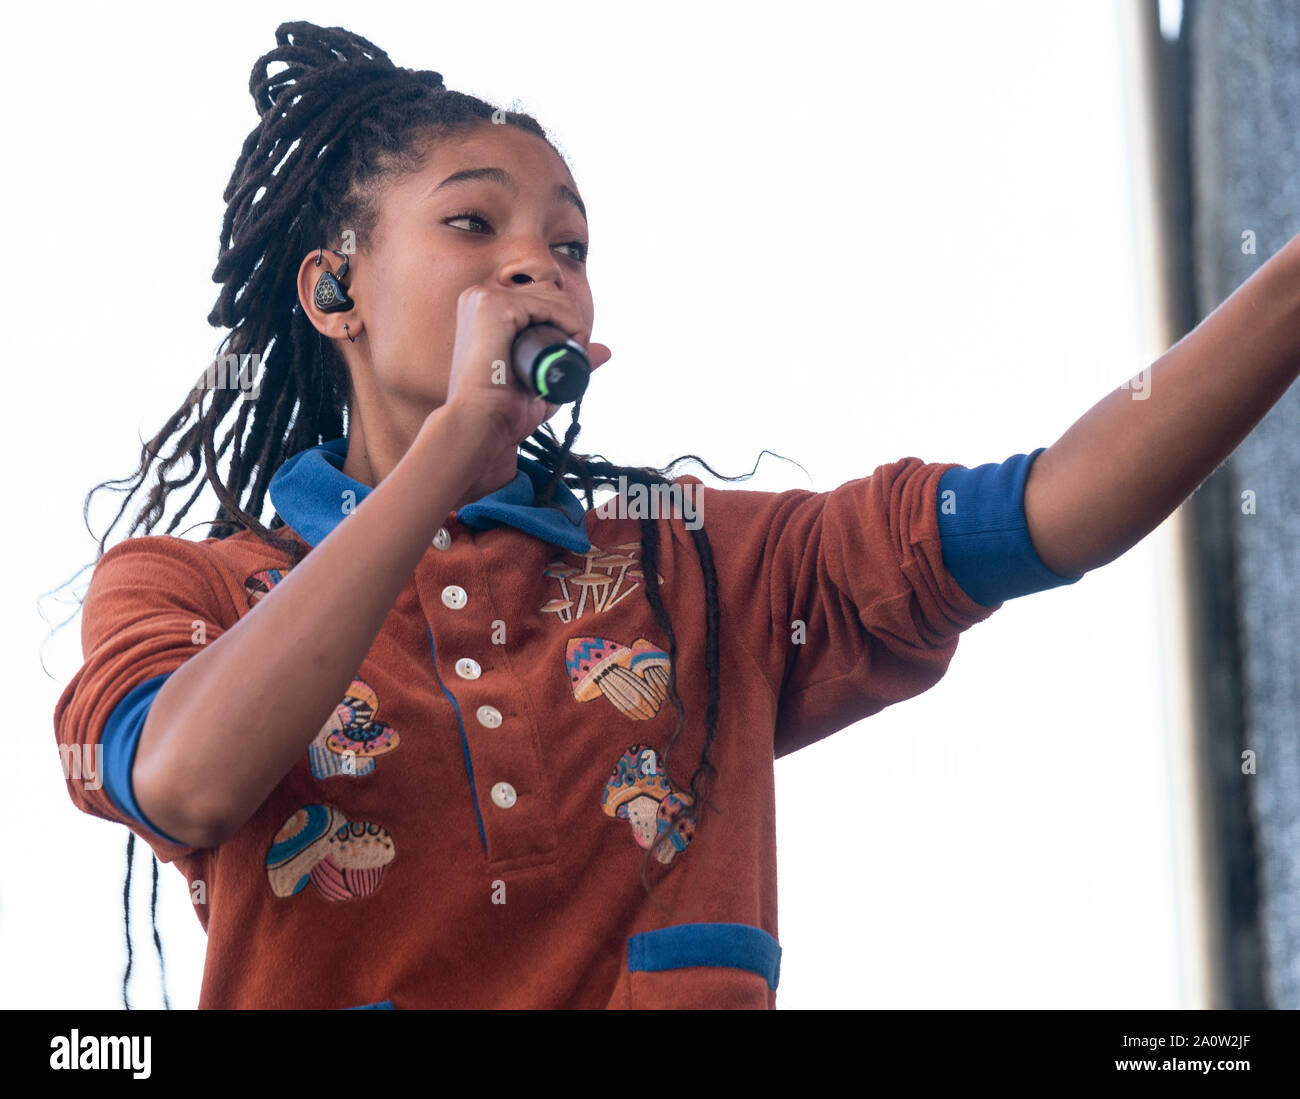 NEW YORK, NY - 20 DE SEPTIEMBRE: Willow Smith realiza en el escenario durante el Clima de Nueva York rally huelga y manifestación en Battery Park el 20 de septiembre de 2019 en Foto de stock